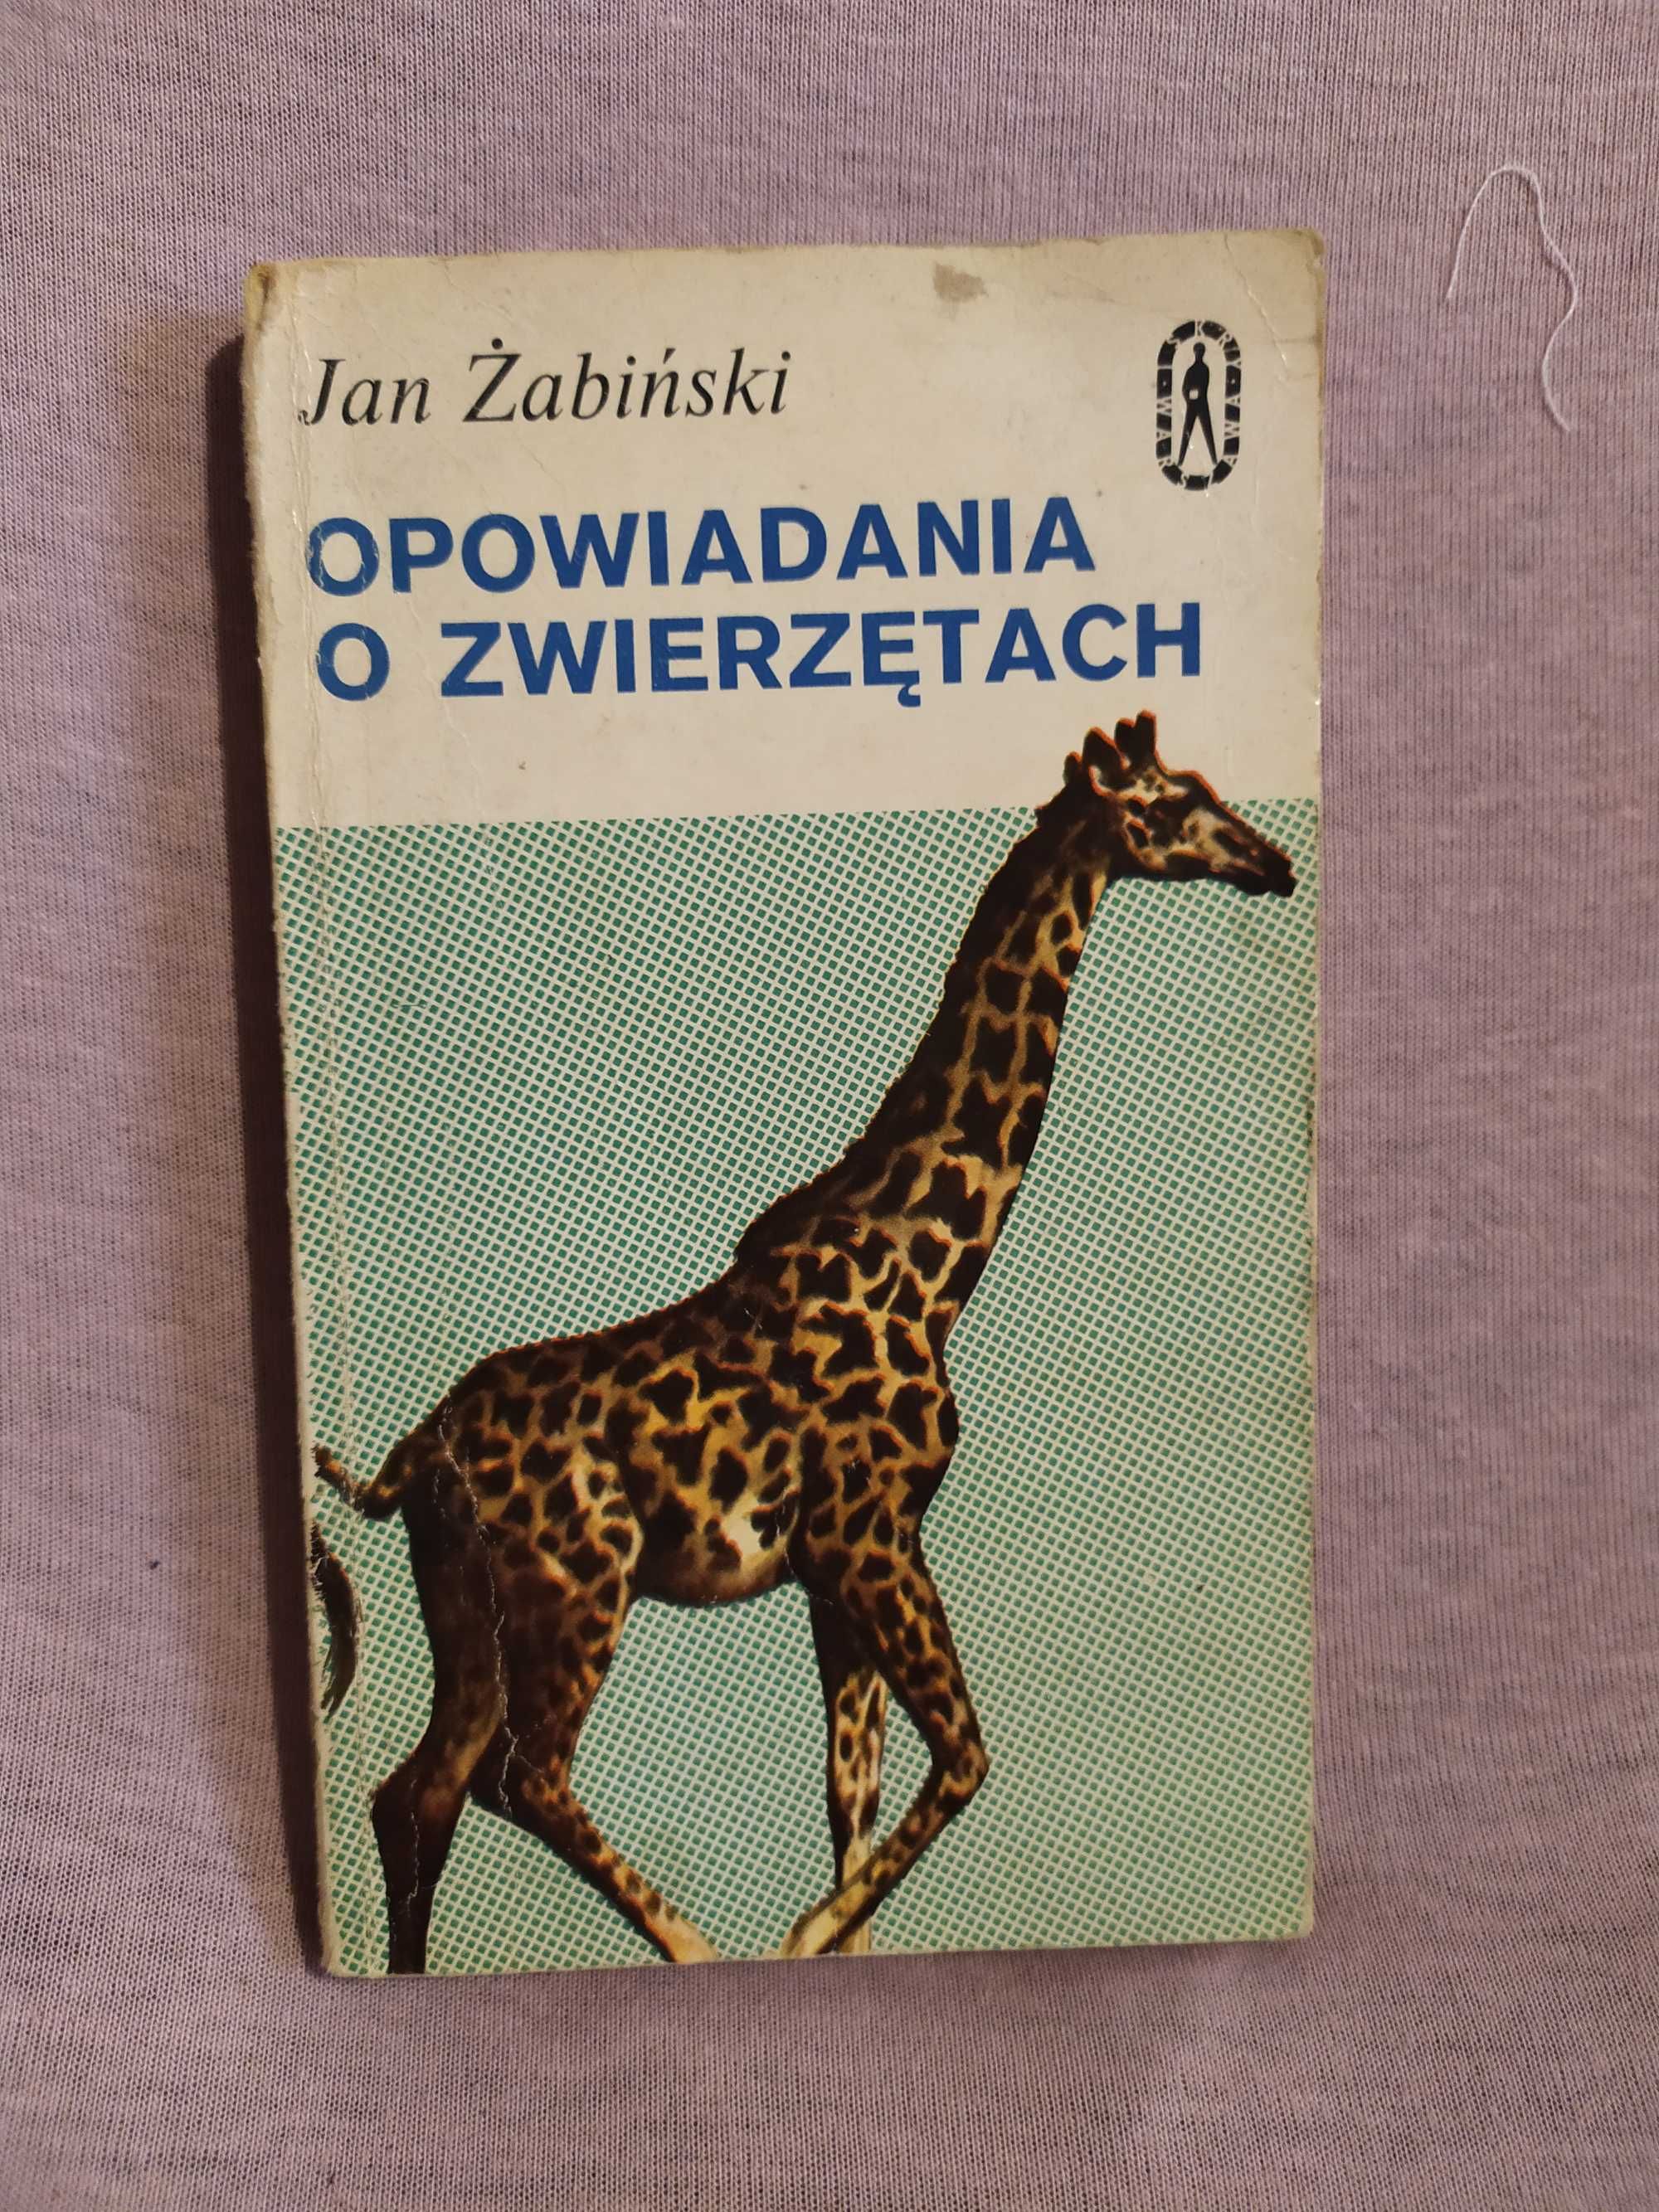 Opowiadania o zwierzętach - Jan Żabiński